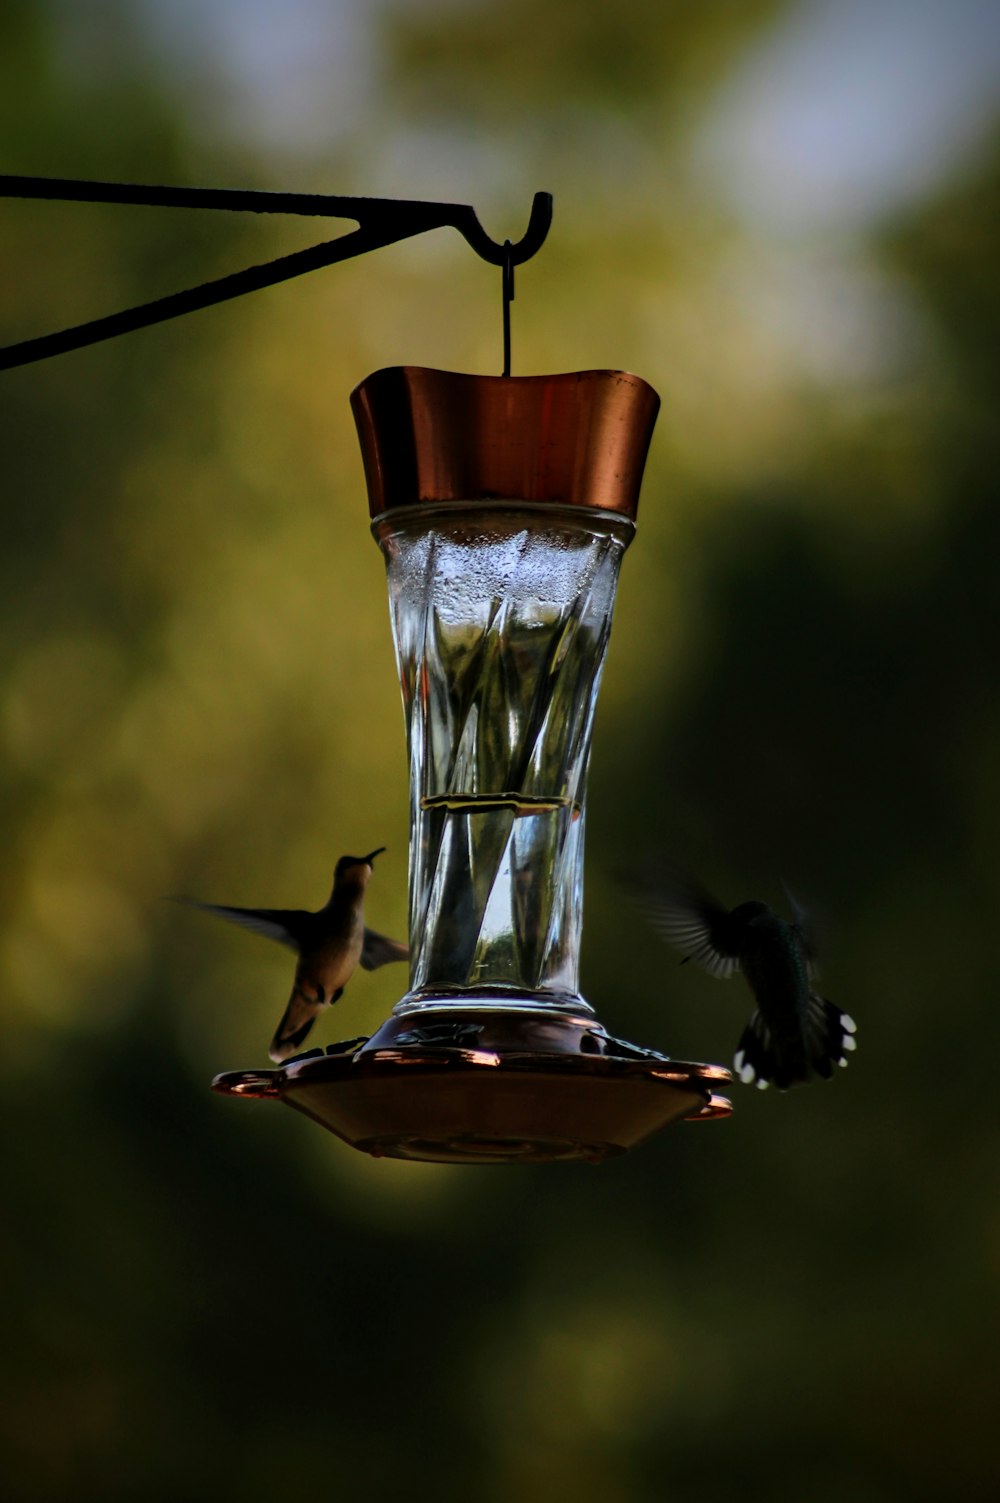 Un colibri boit dans une mangeoire à colibris